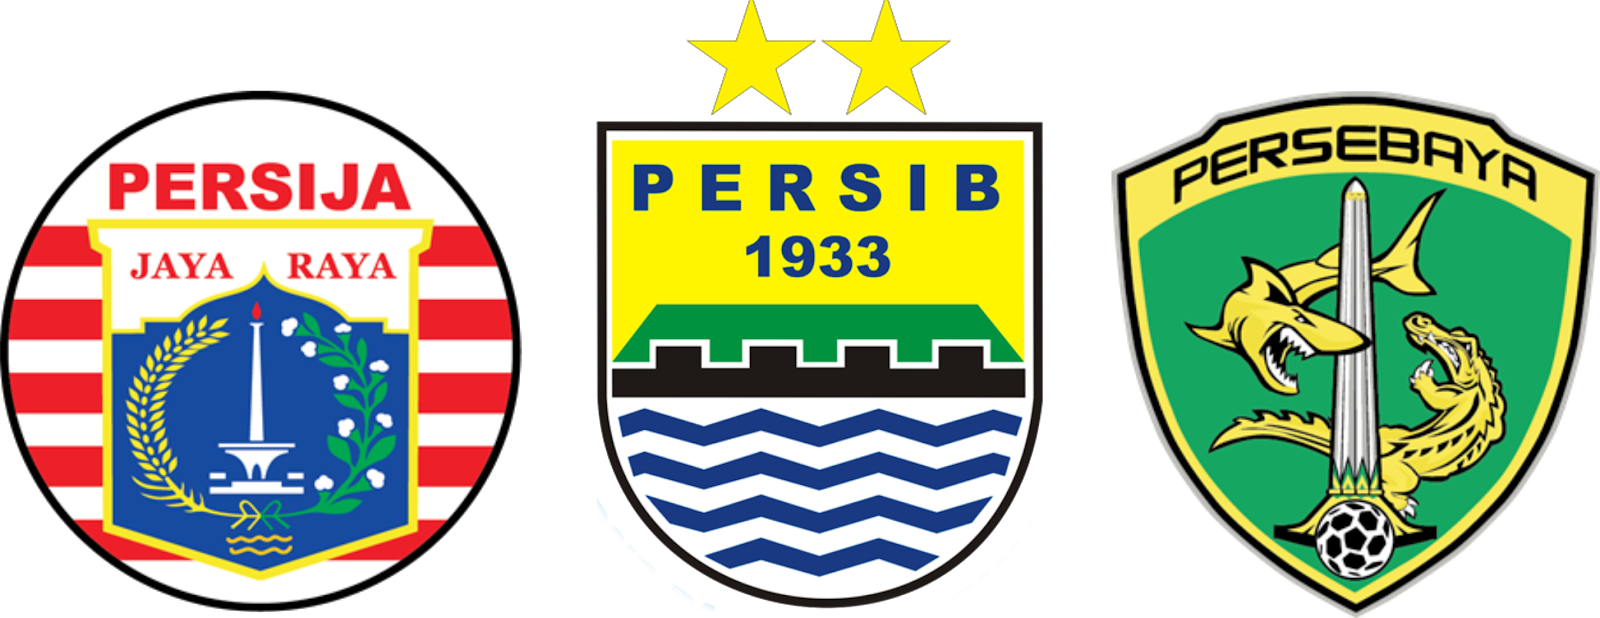 Adu Kekuatan Lini Tengah Persib Bandung, Persija Jakarta dan Persebaya, Mana Yang Lebih Jos ! 